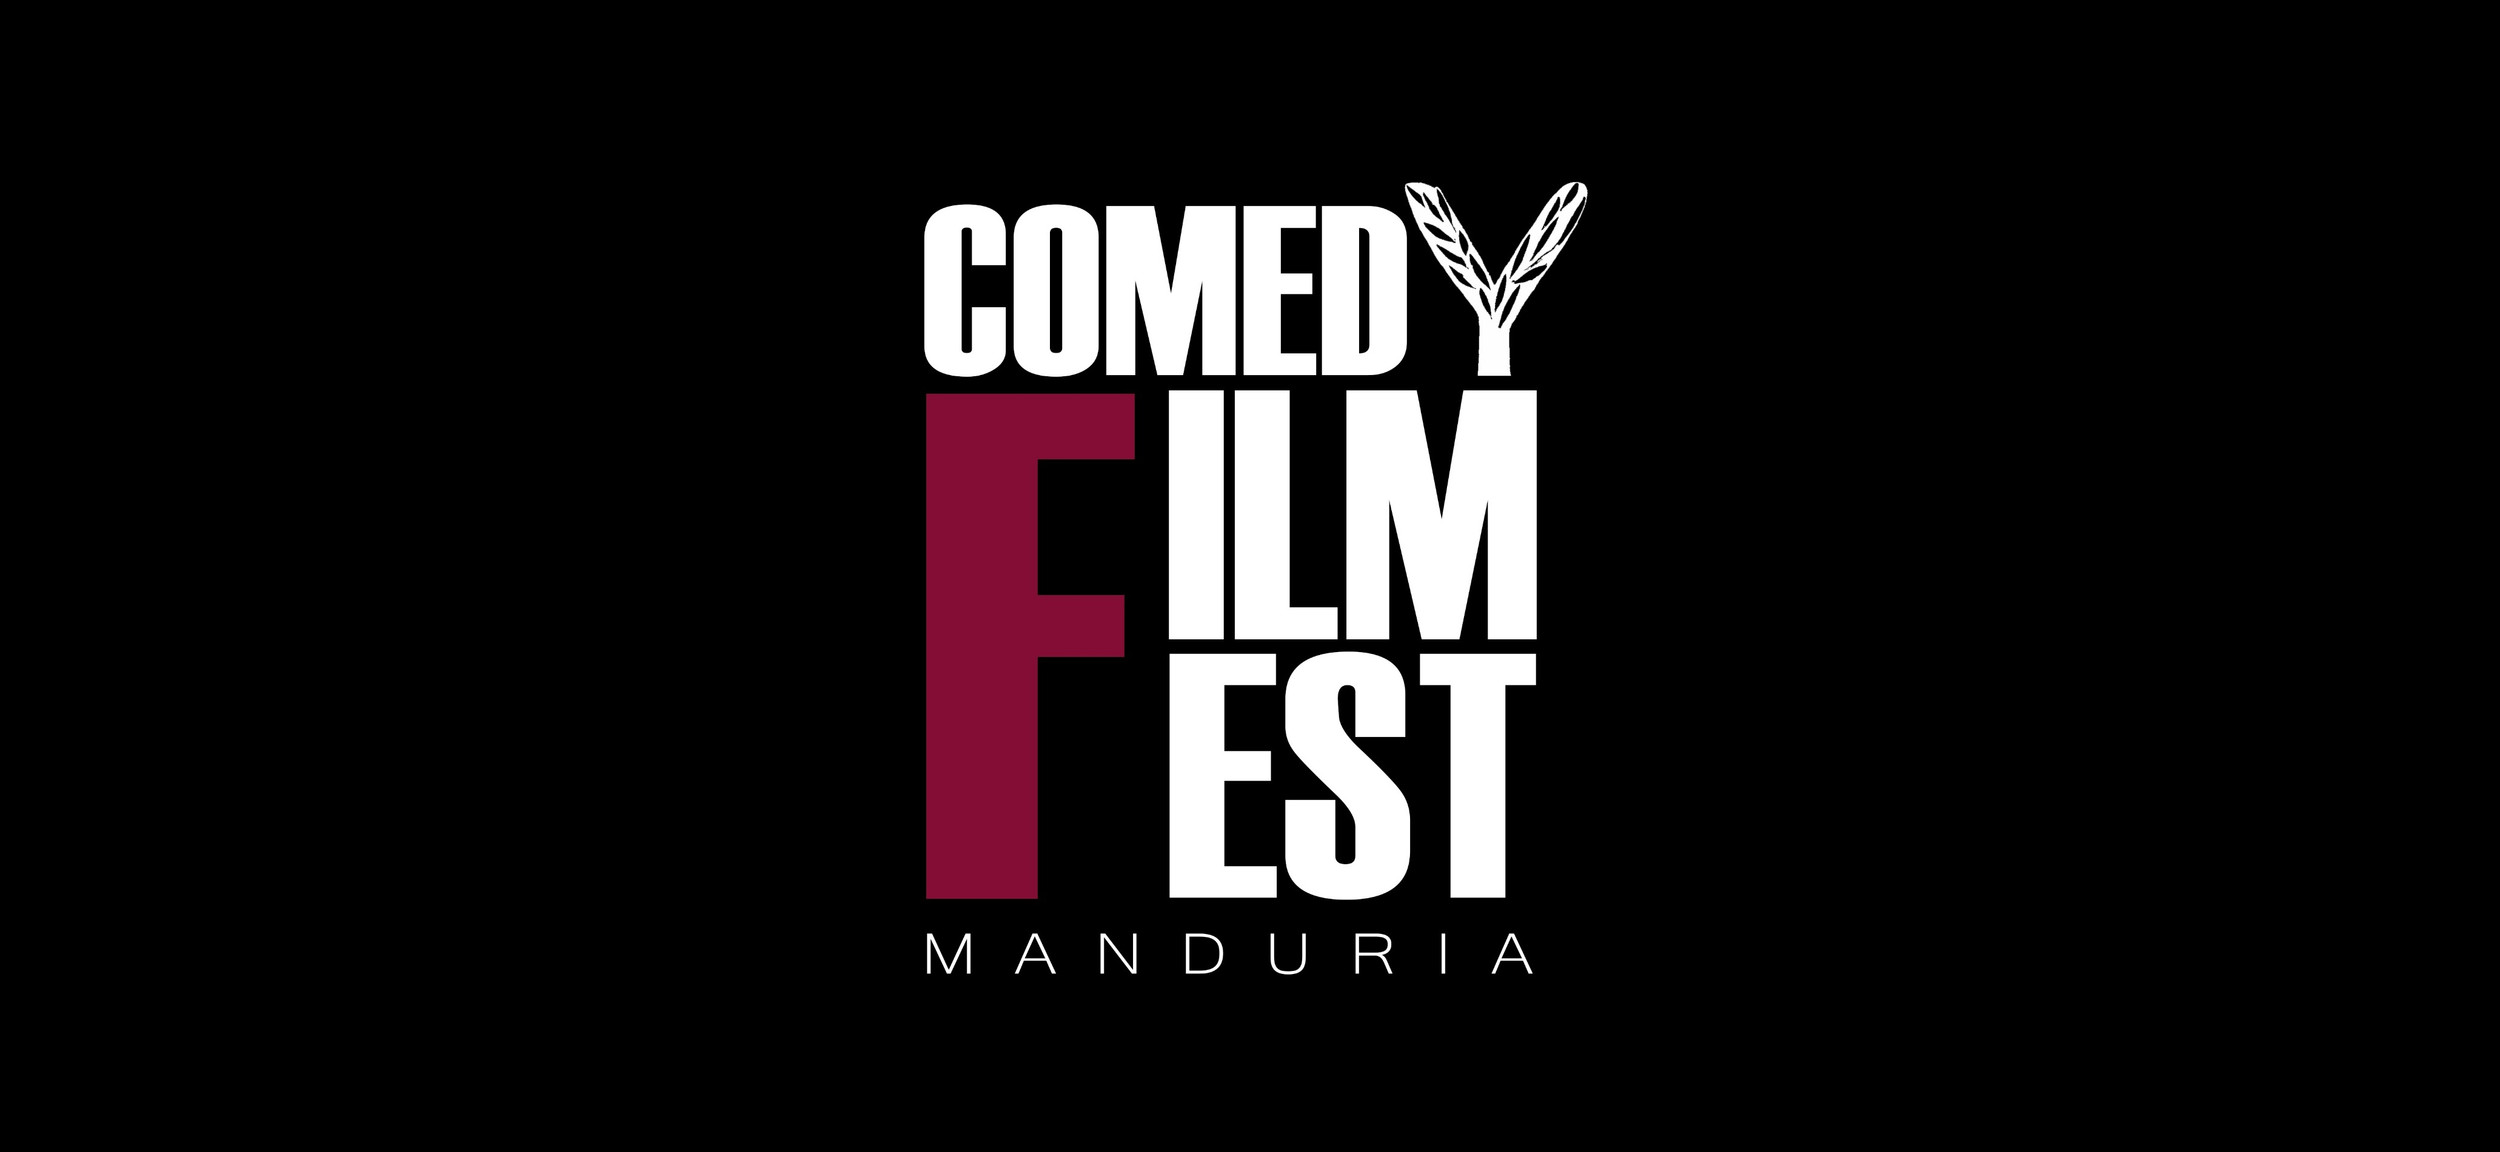 MONTESANO, TIRABASSI, MATTIOLI: ARRIVA IL “COMEDY FILM FEST – MANDURIA” 